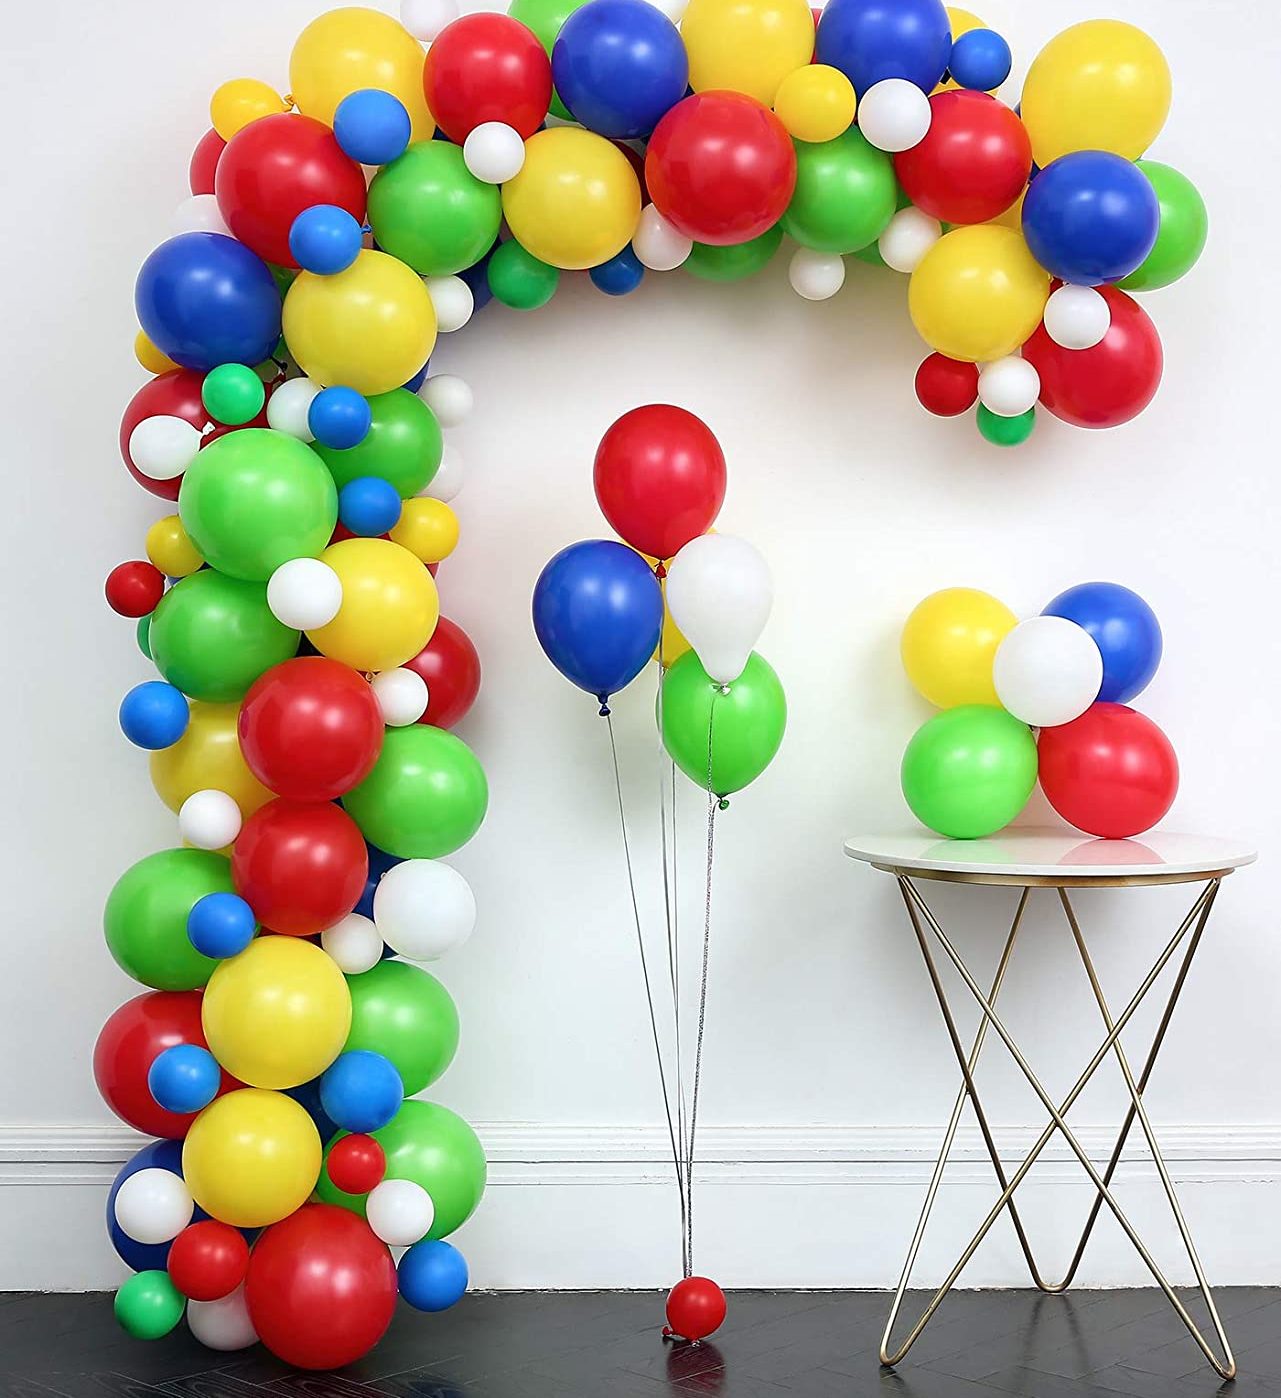 lego-party-ideas-balloons